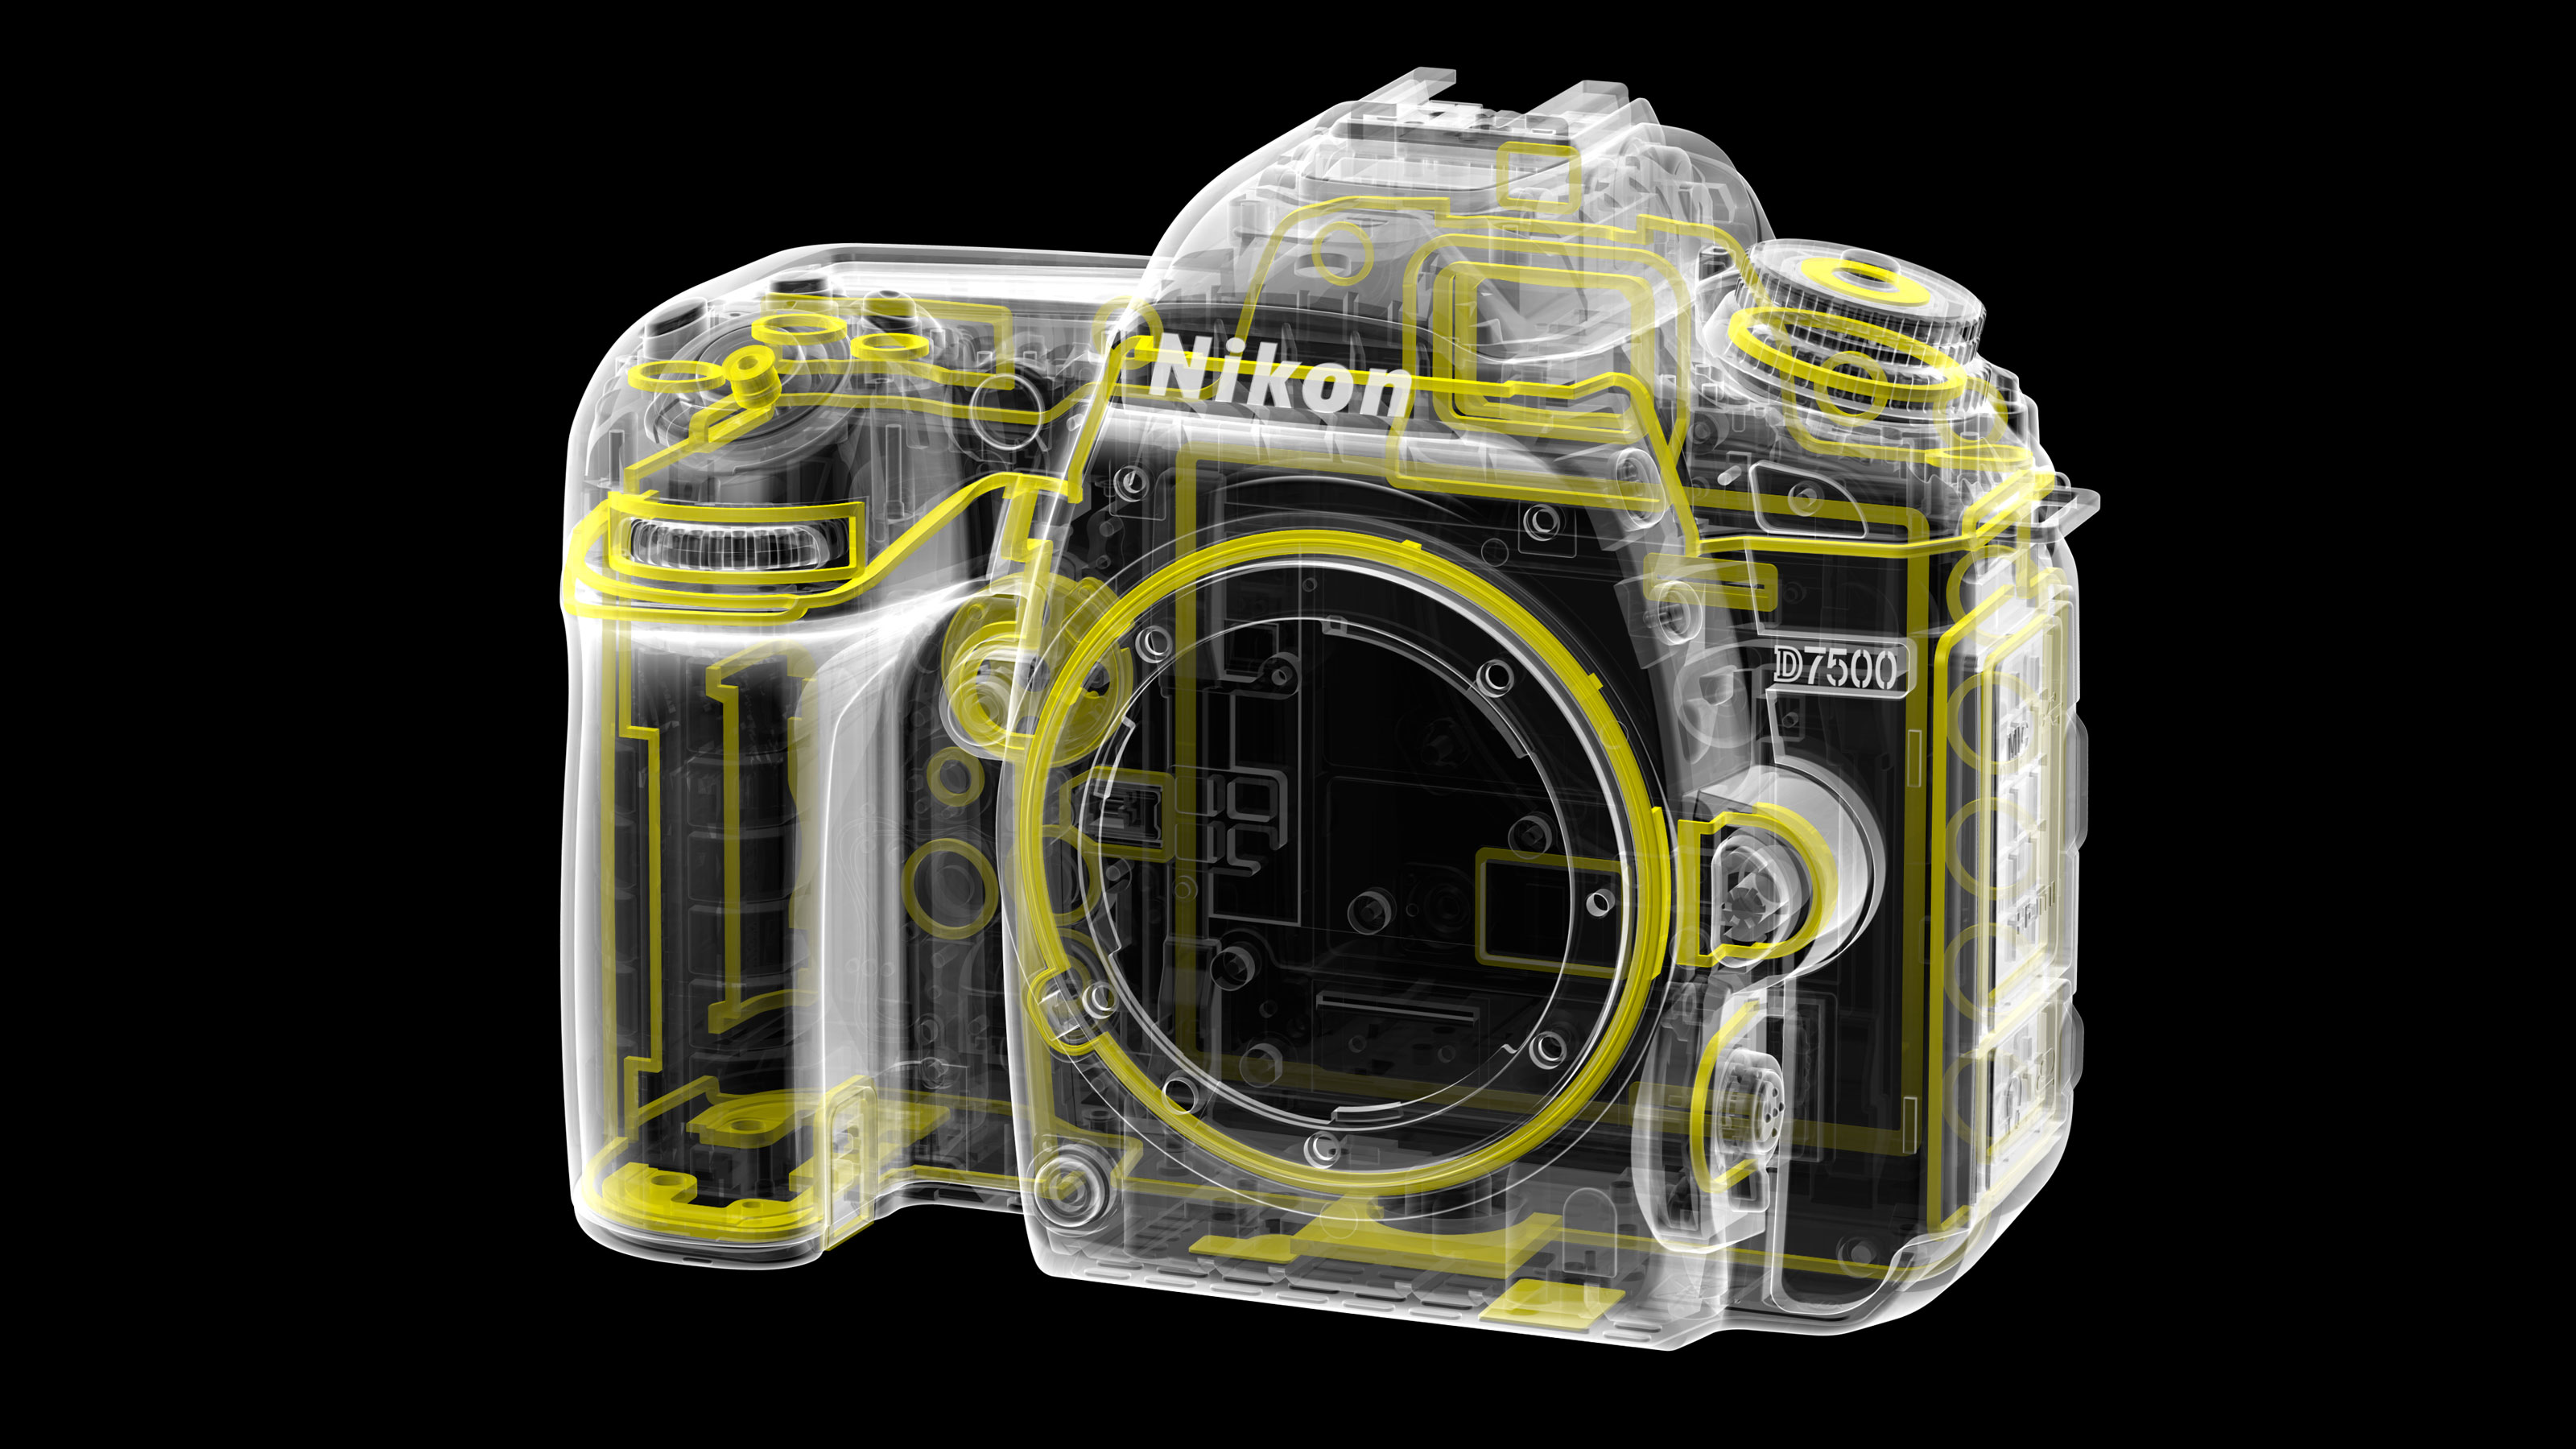 Nikon D5600 vs D7500